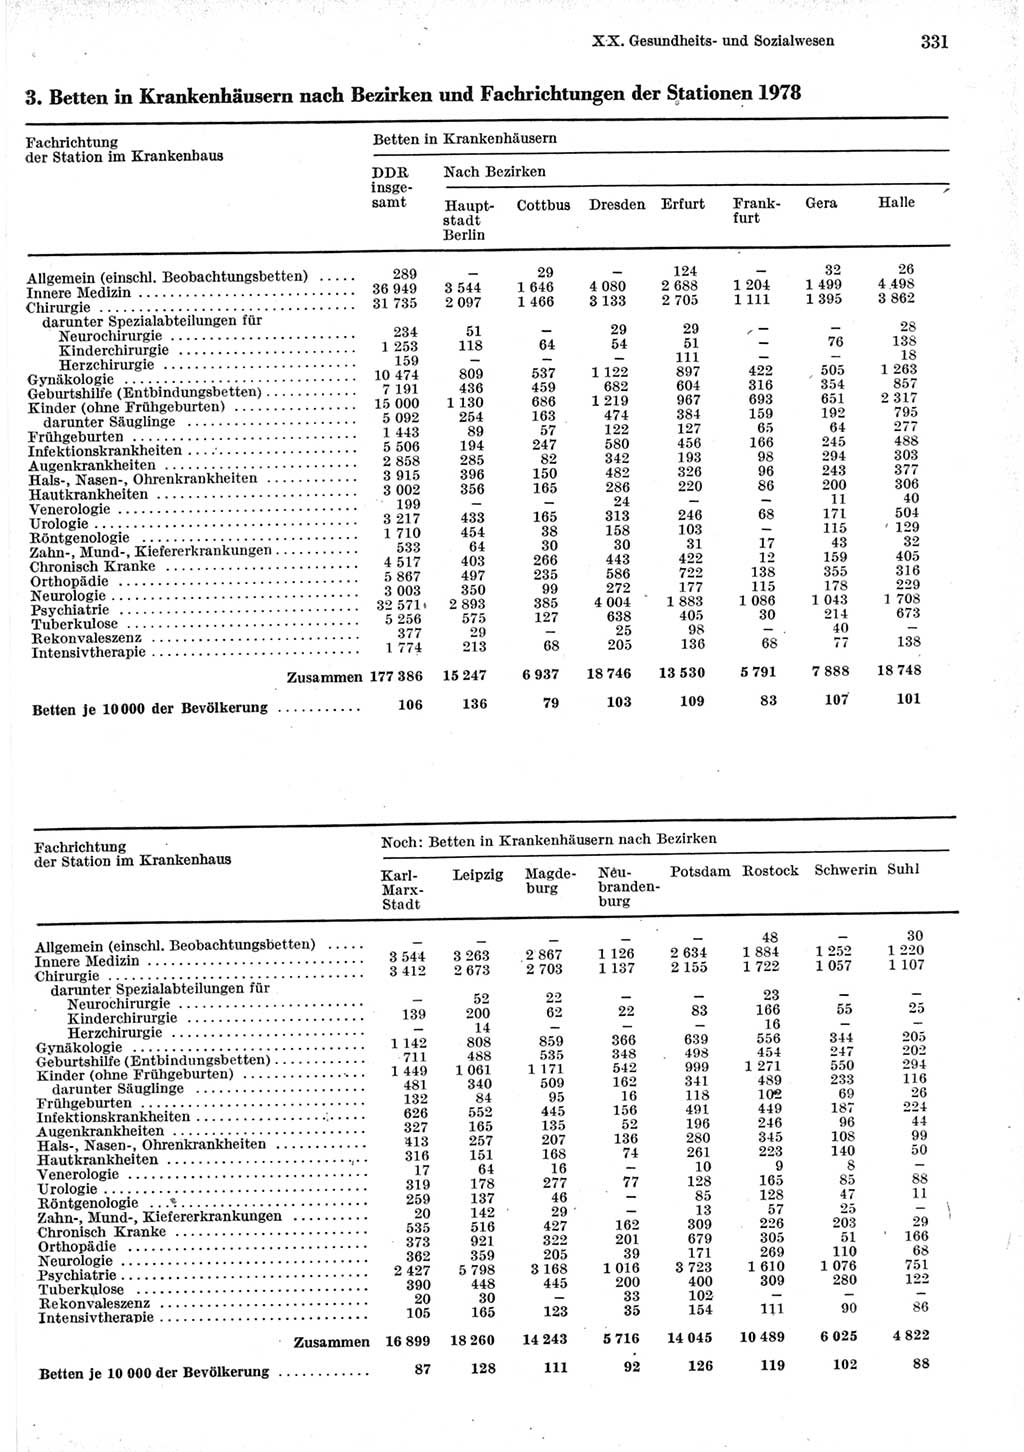 Statistisches Jahrbuch der Deutschen Demokratischen Republik (DDR) 1979, Seite 331 (Stat. Jb. DDR 1979, S. 331)